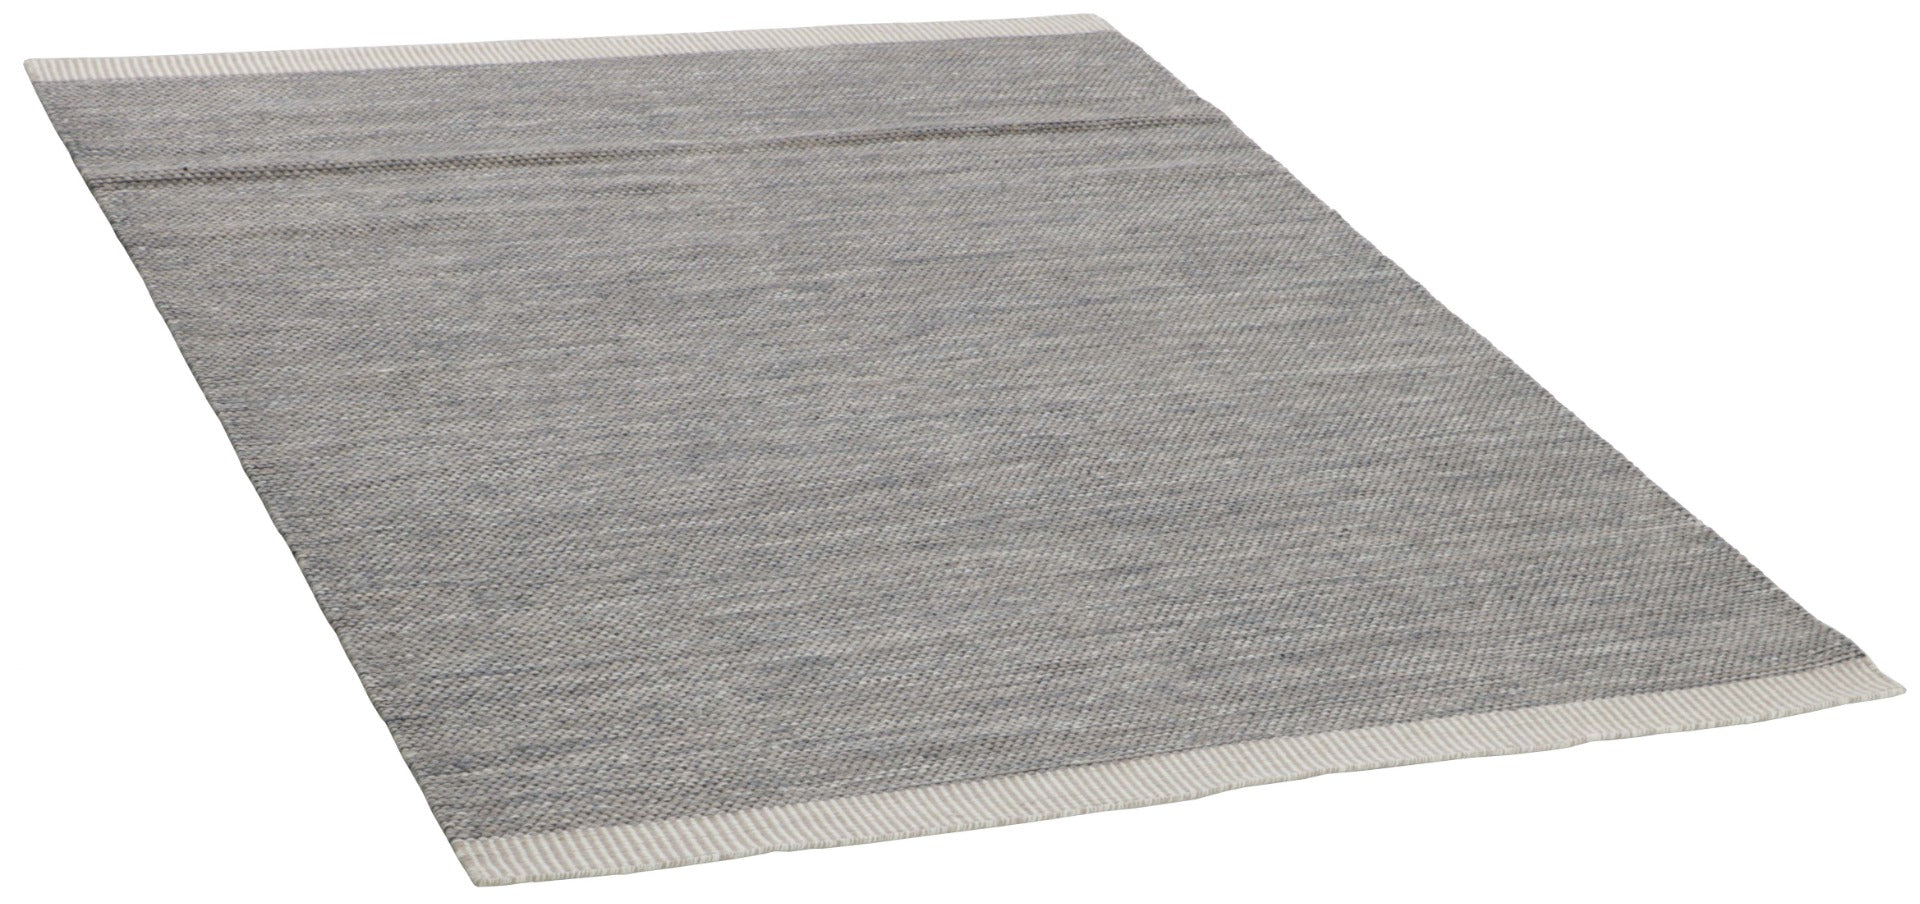 plain grey and beige flatweave rug
